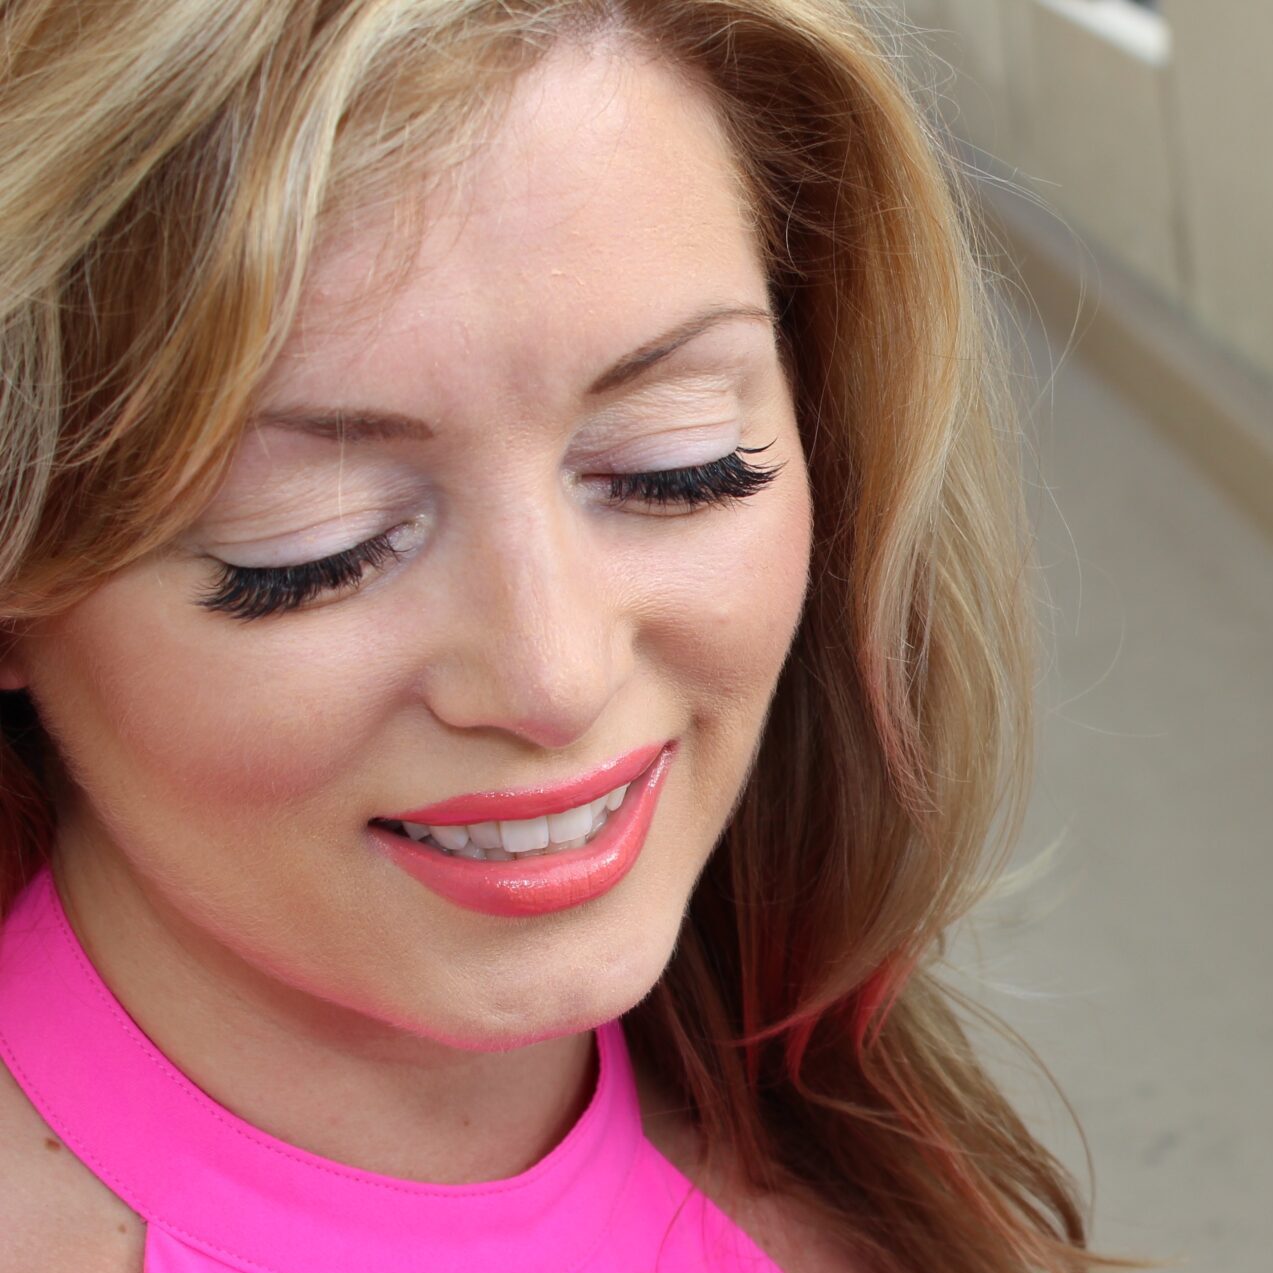 Blonde woman wearing eyelash extensions smiling. 